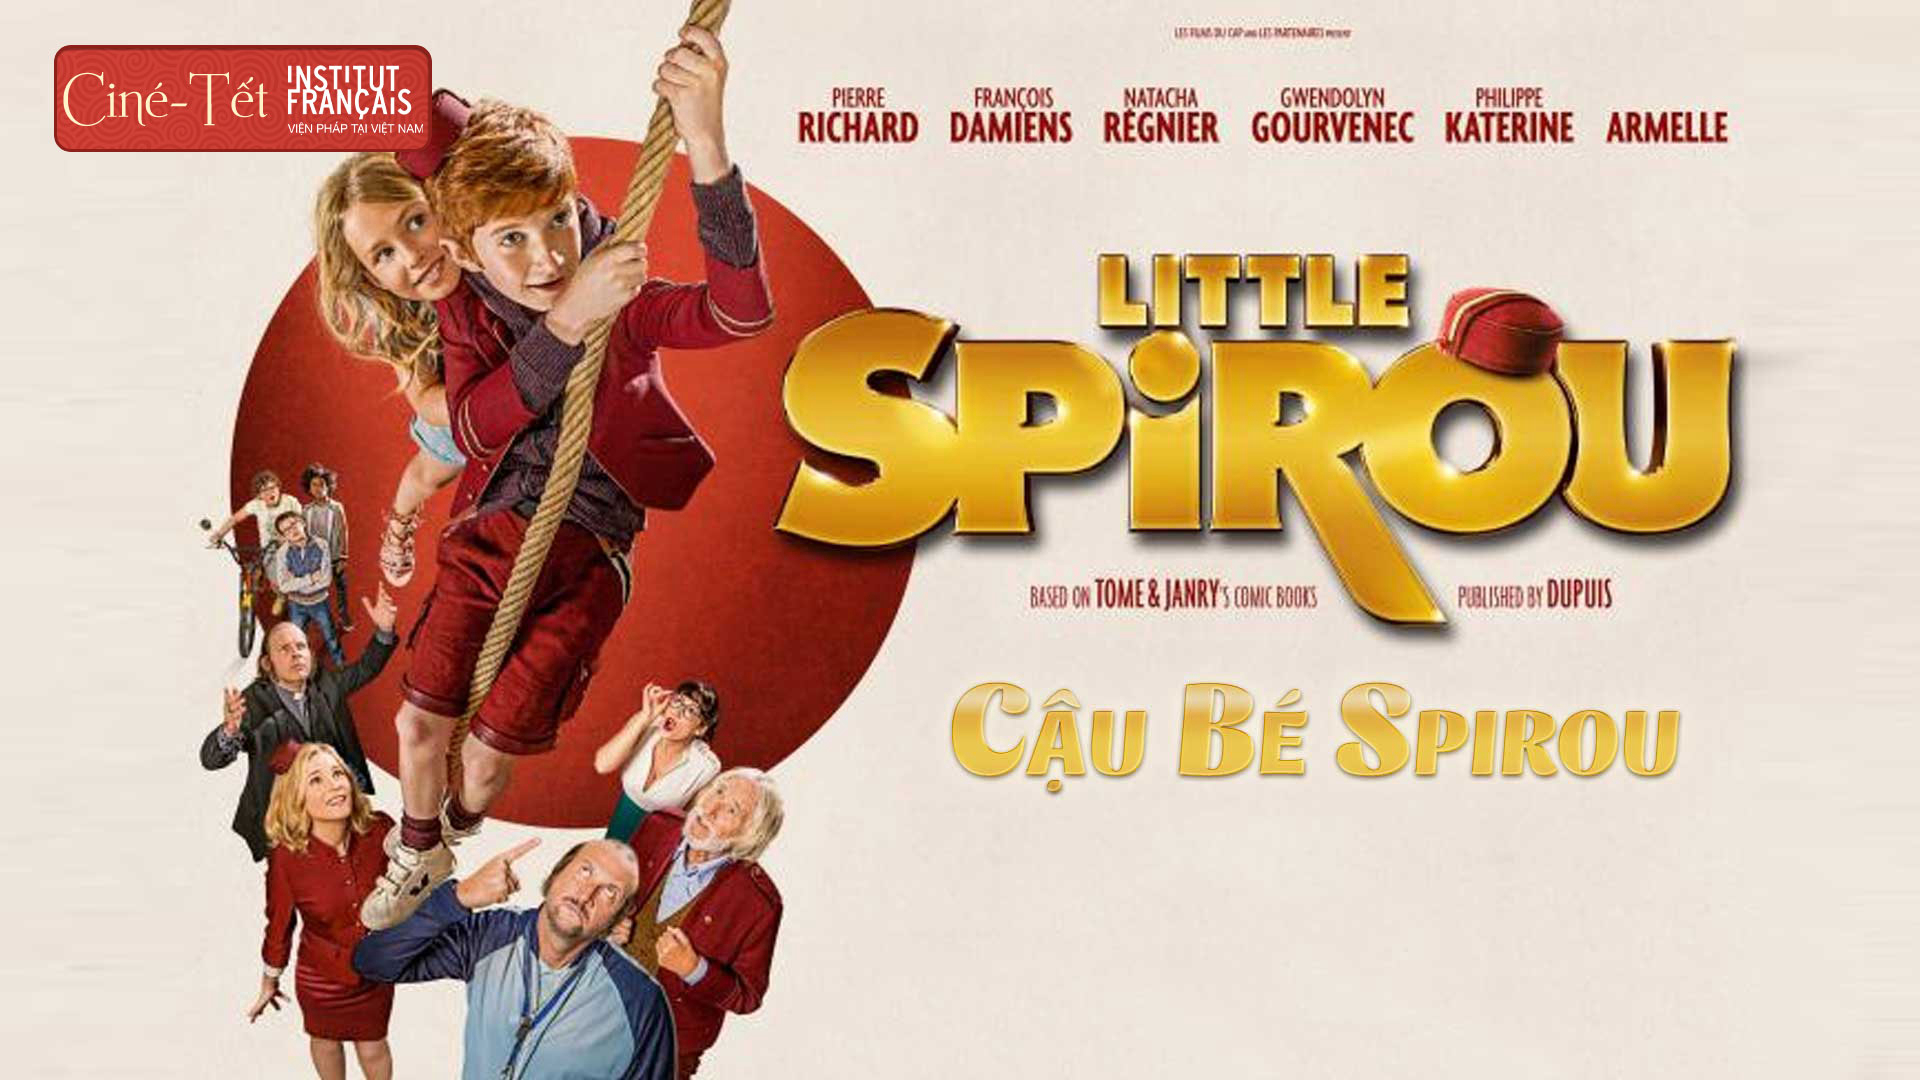 Little Spirou / Little Spirou (2017)